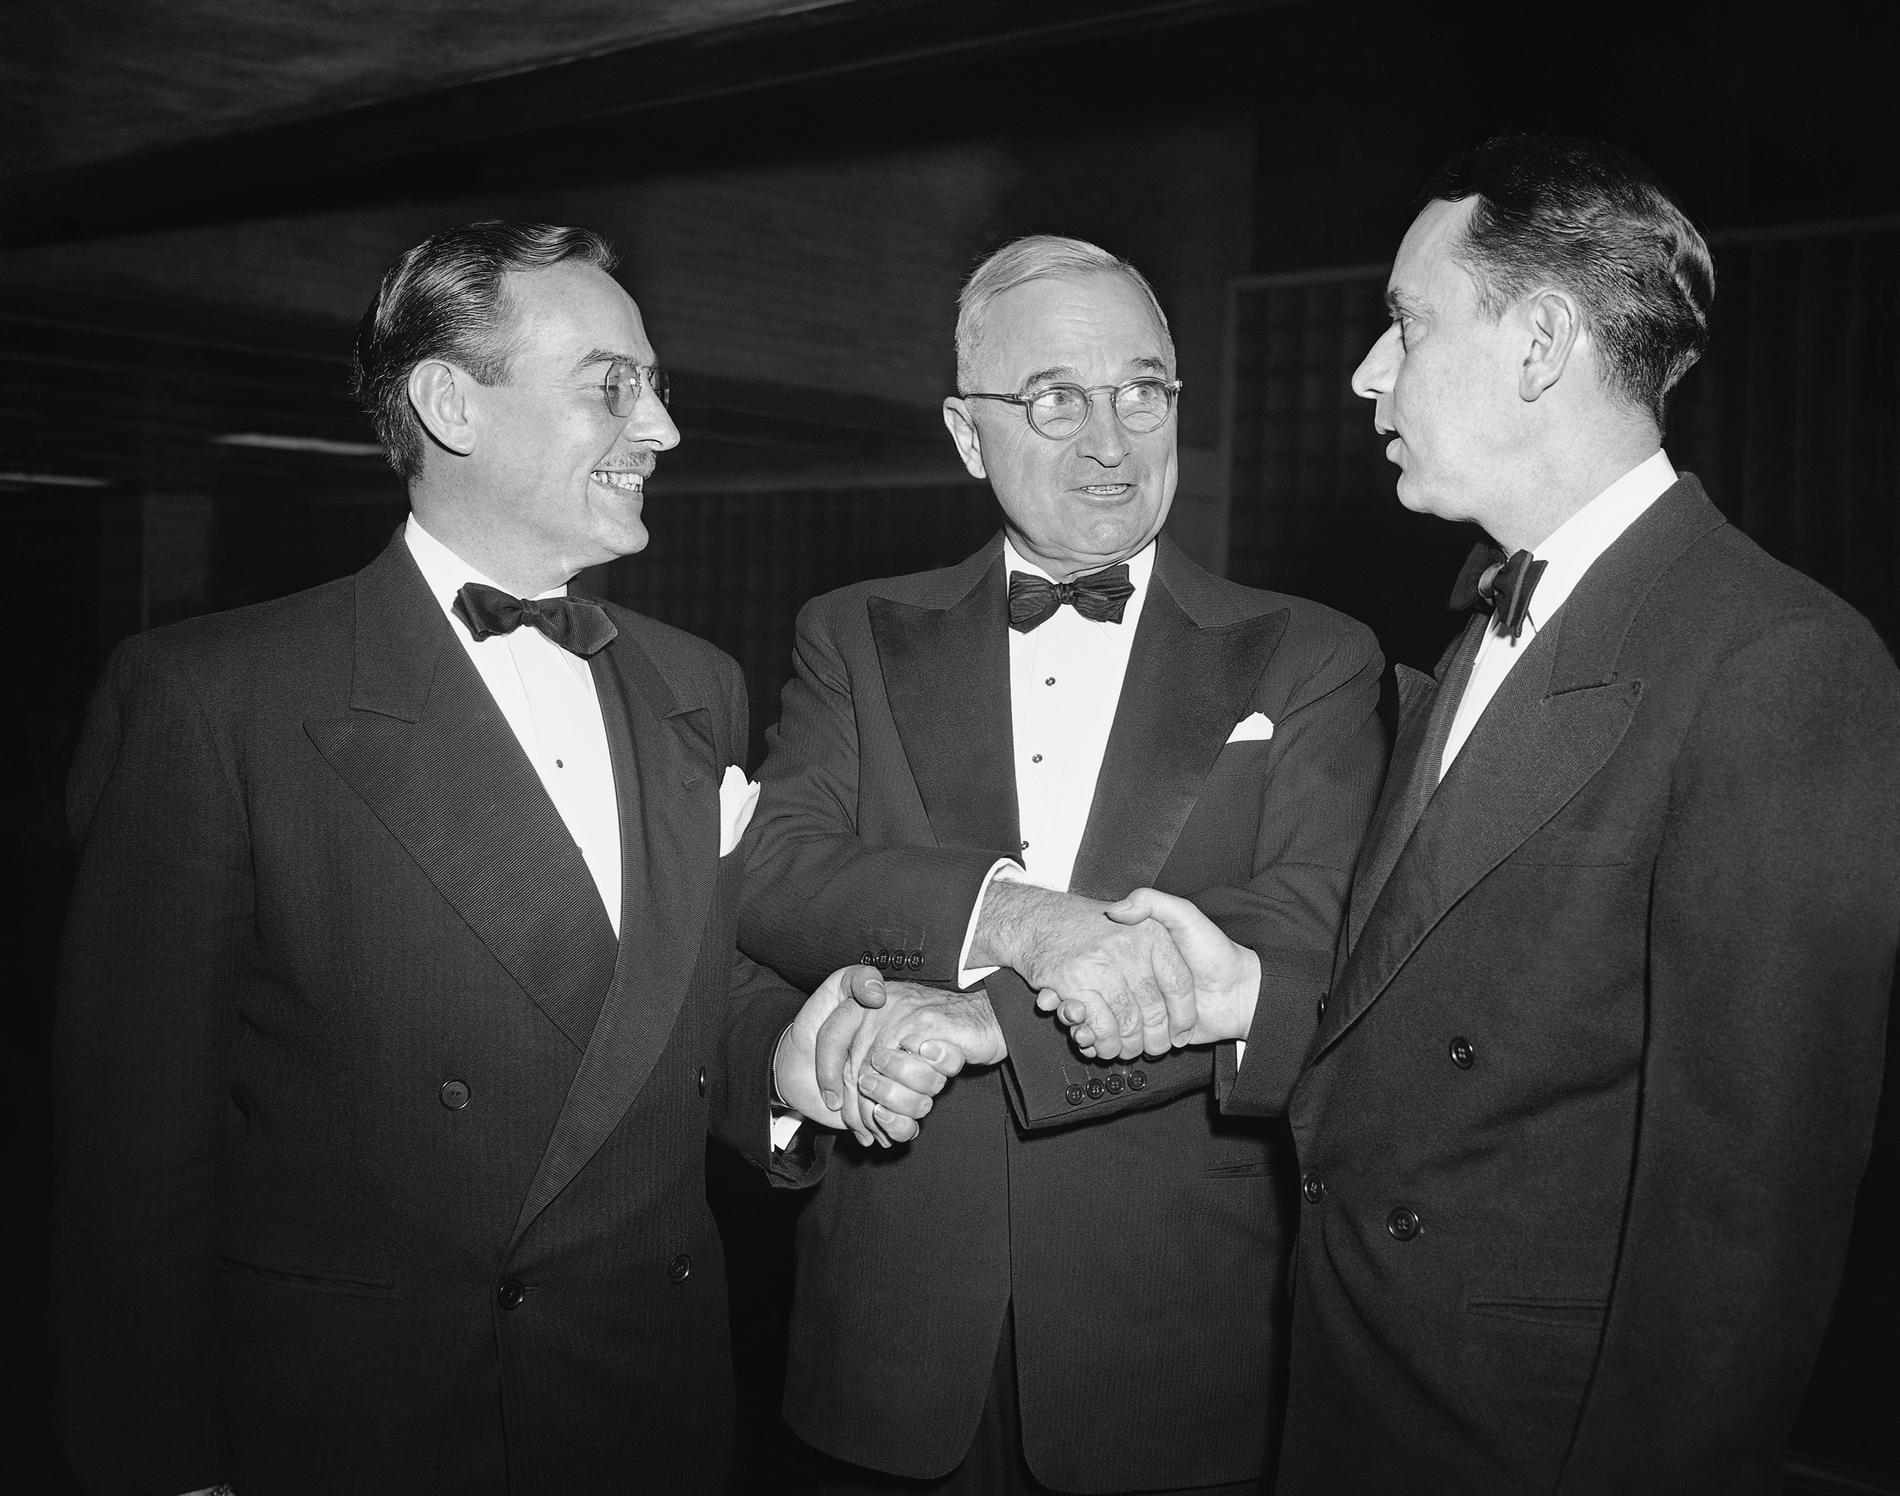 Så här såg det ut när president Harry Truman (mitten) hälsade på pressrepresentanterna Robert G Nixon och Enerest Vaccaro vid korrespondentmiddagen 1949.